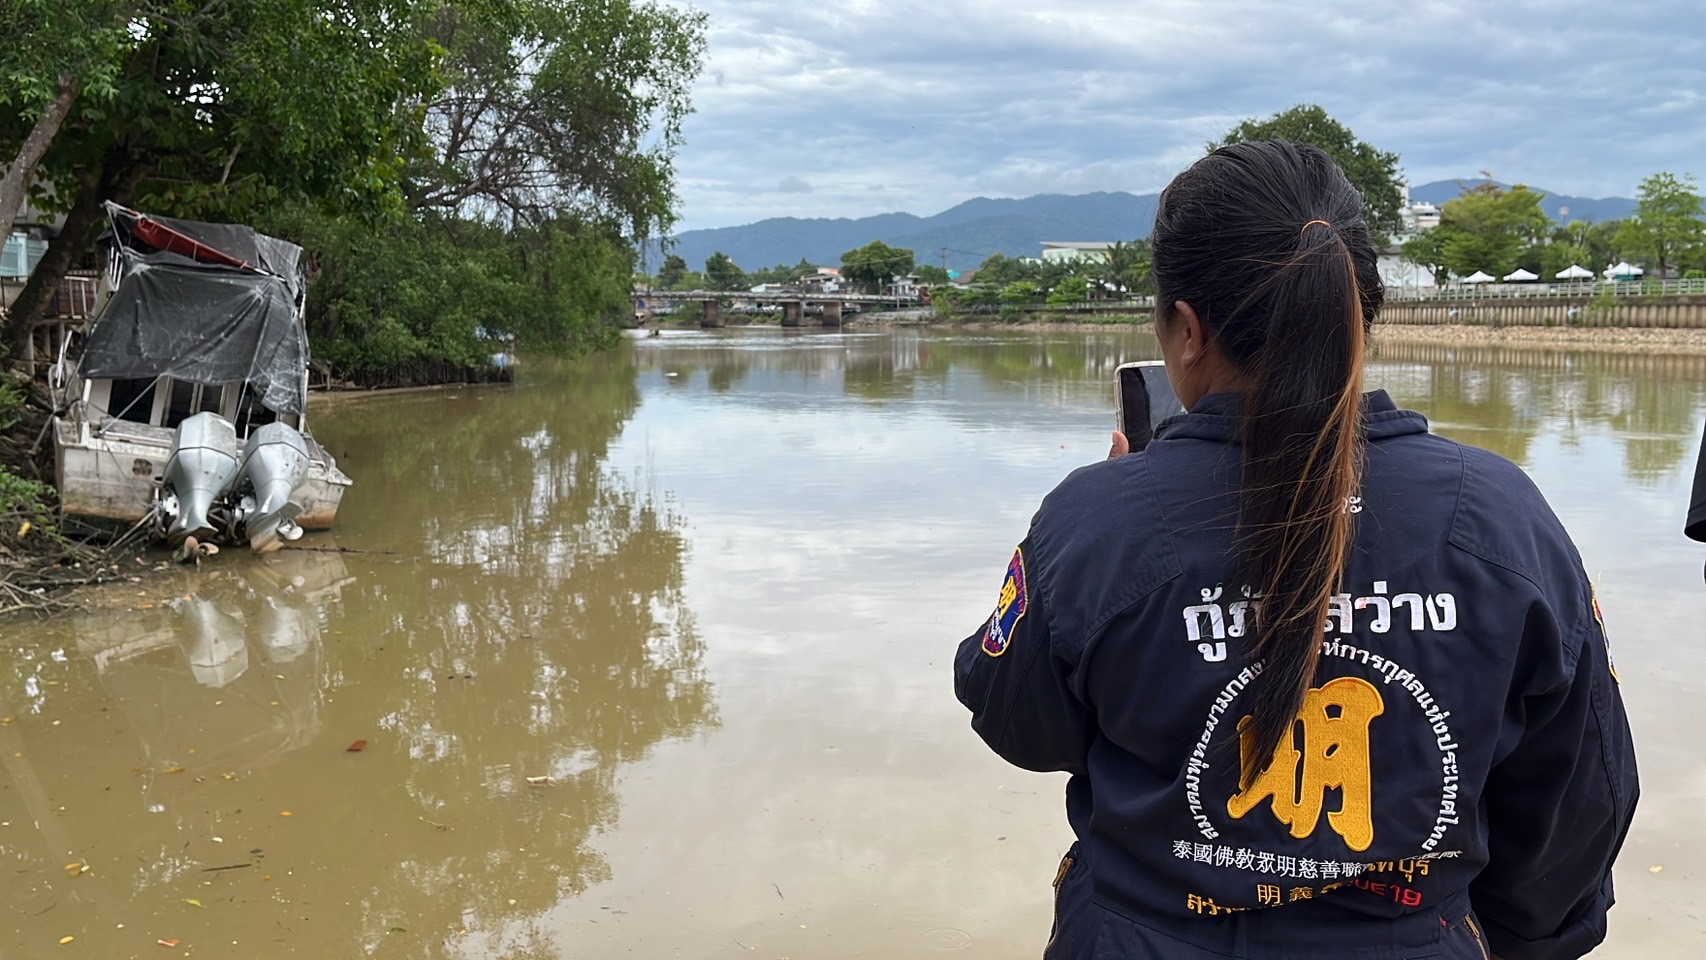 จันทบุรี-กู้ภัยพายเรือนำร่างชายเสียชีวิตในแม่น้ำจันทบุรีขึ้นมาตรวจสอบ